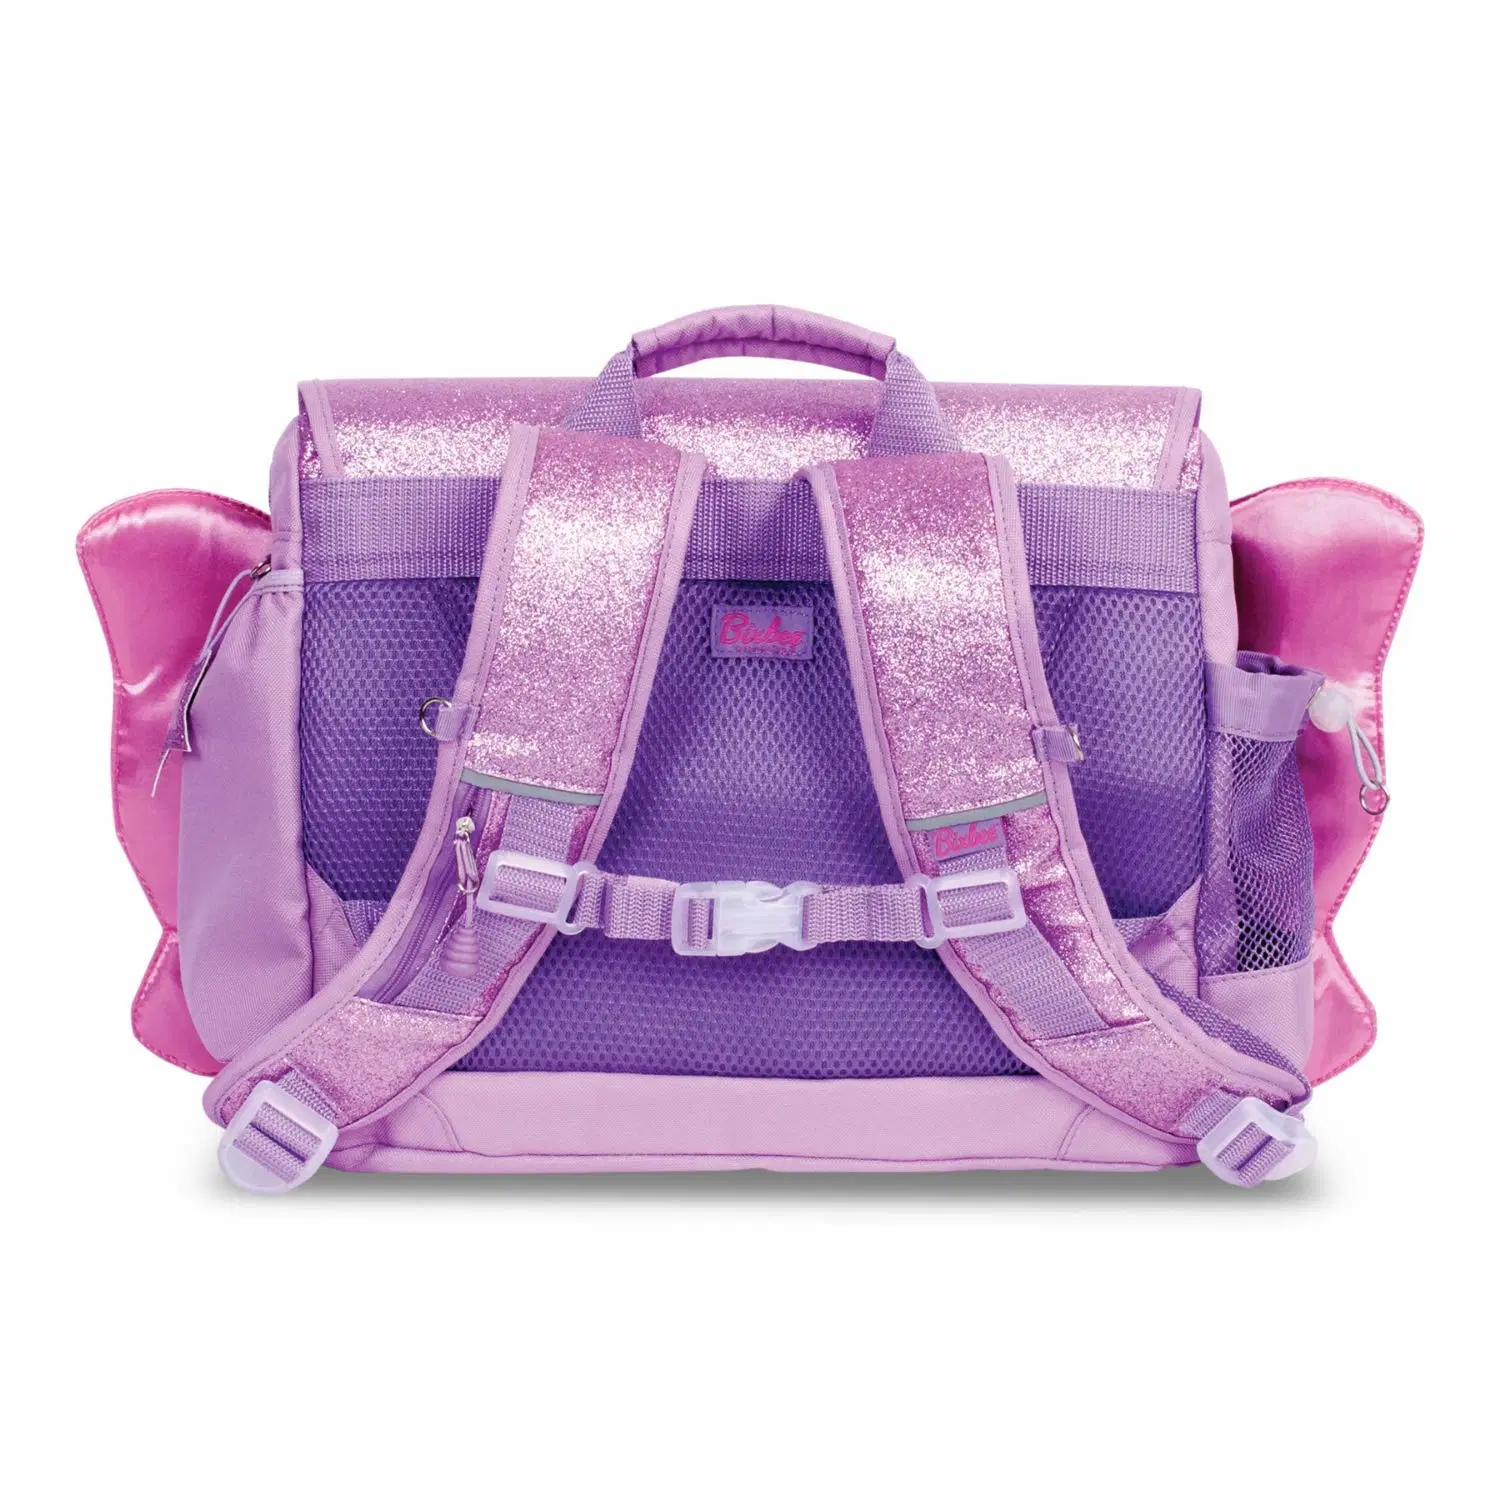 Elementary School Bag Purple Kids School Bookbag School Decoration Lovely for Girl Student